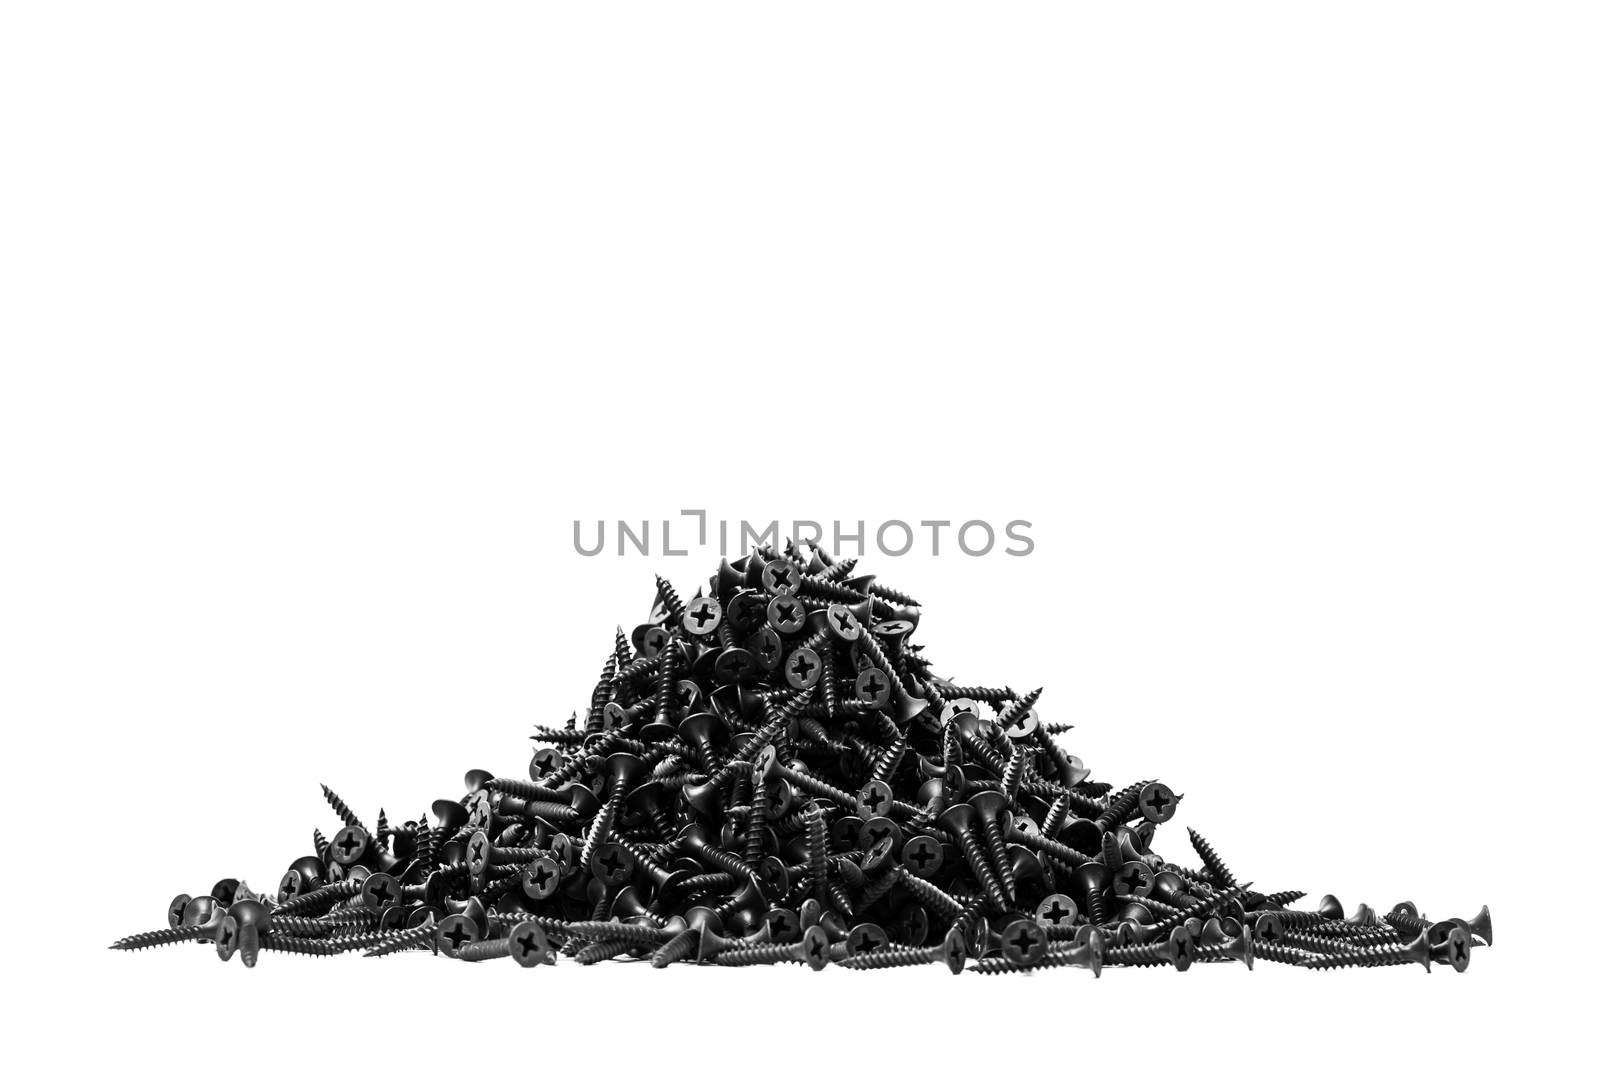 group of black screws by kokimk